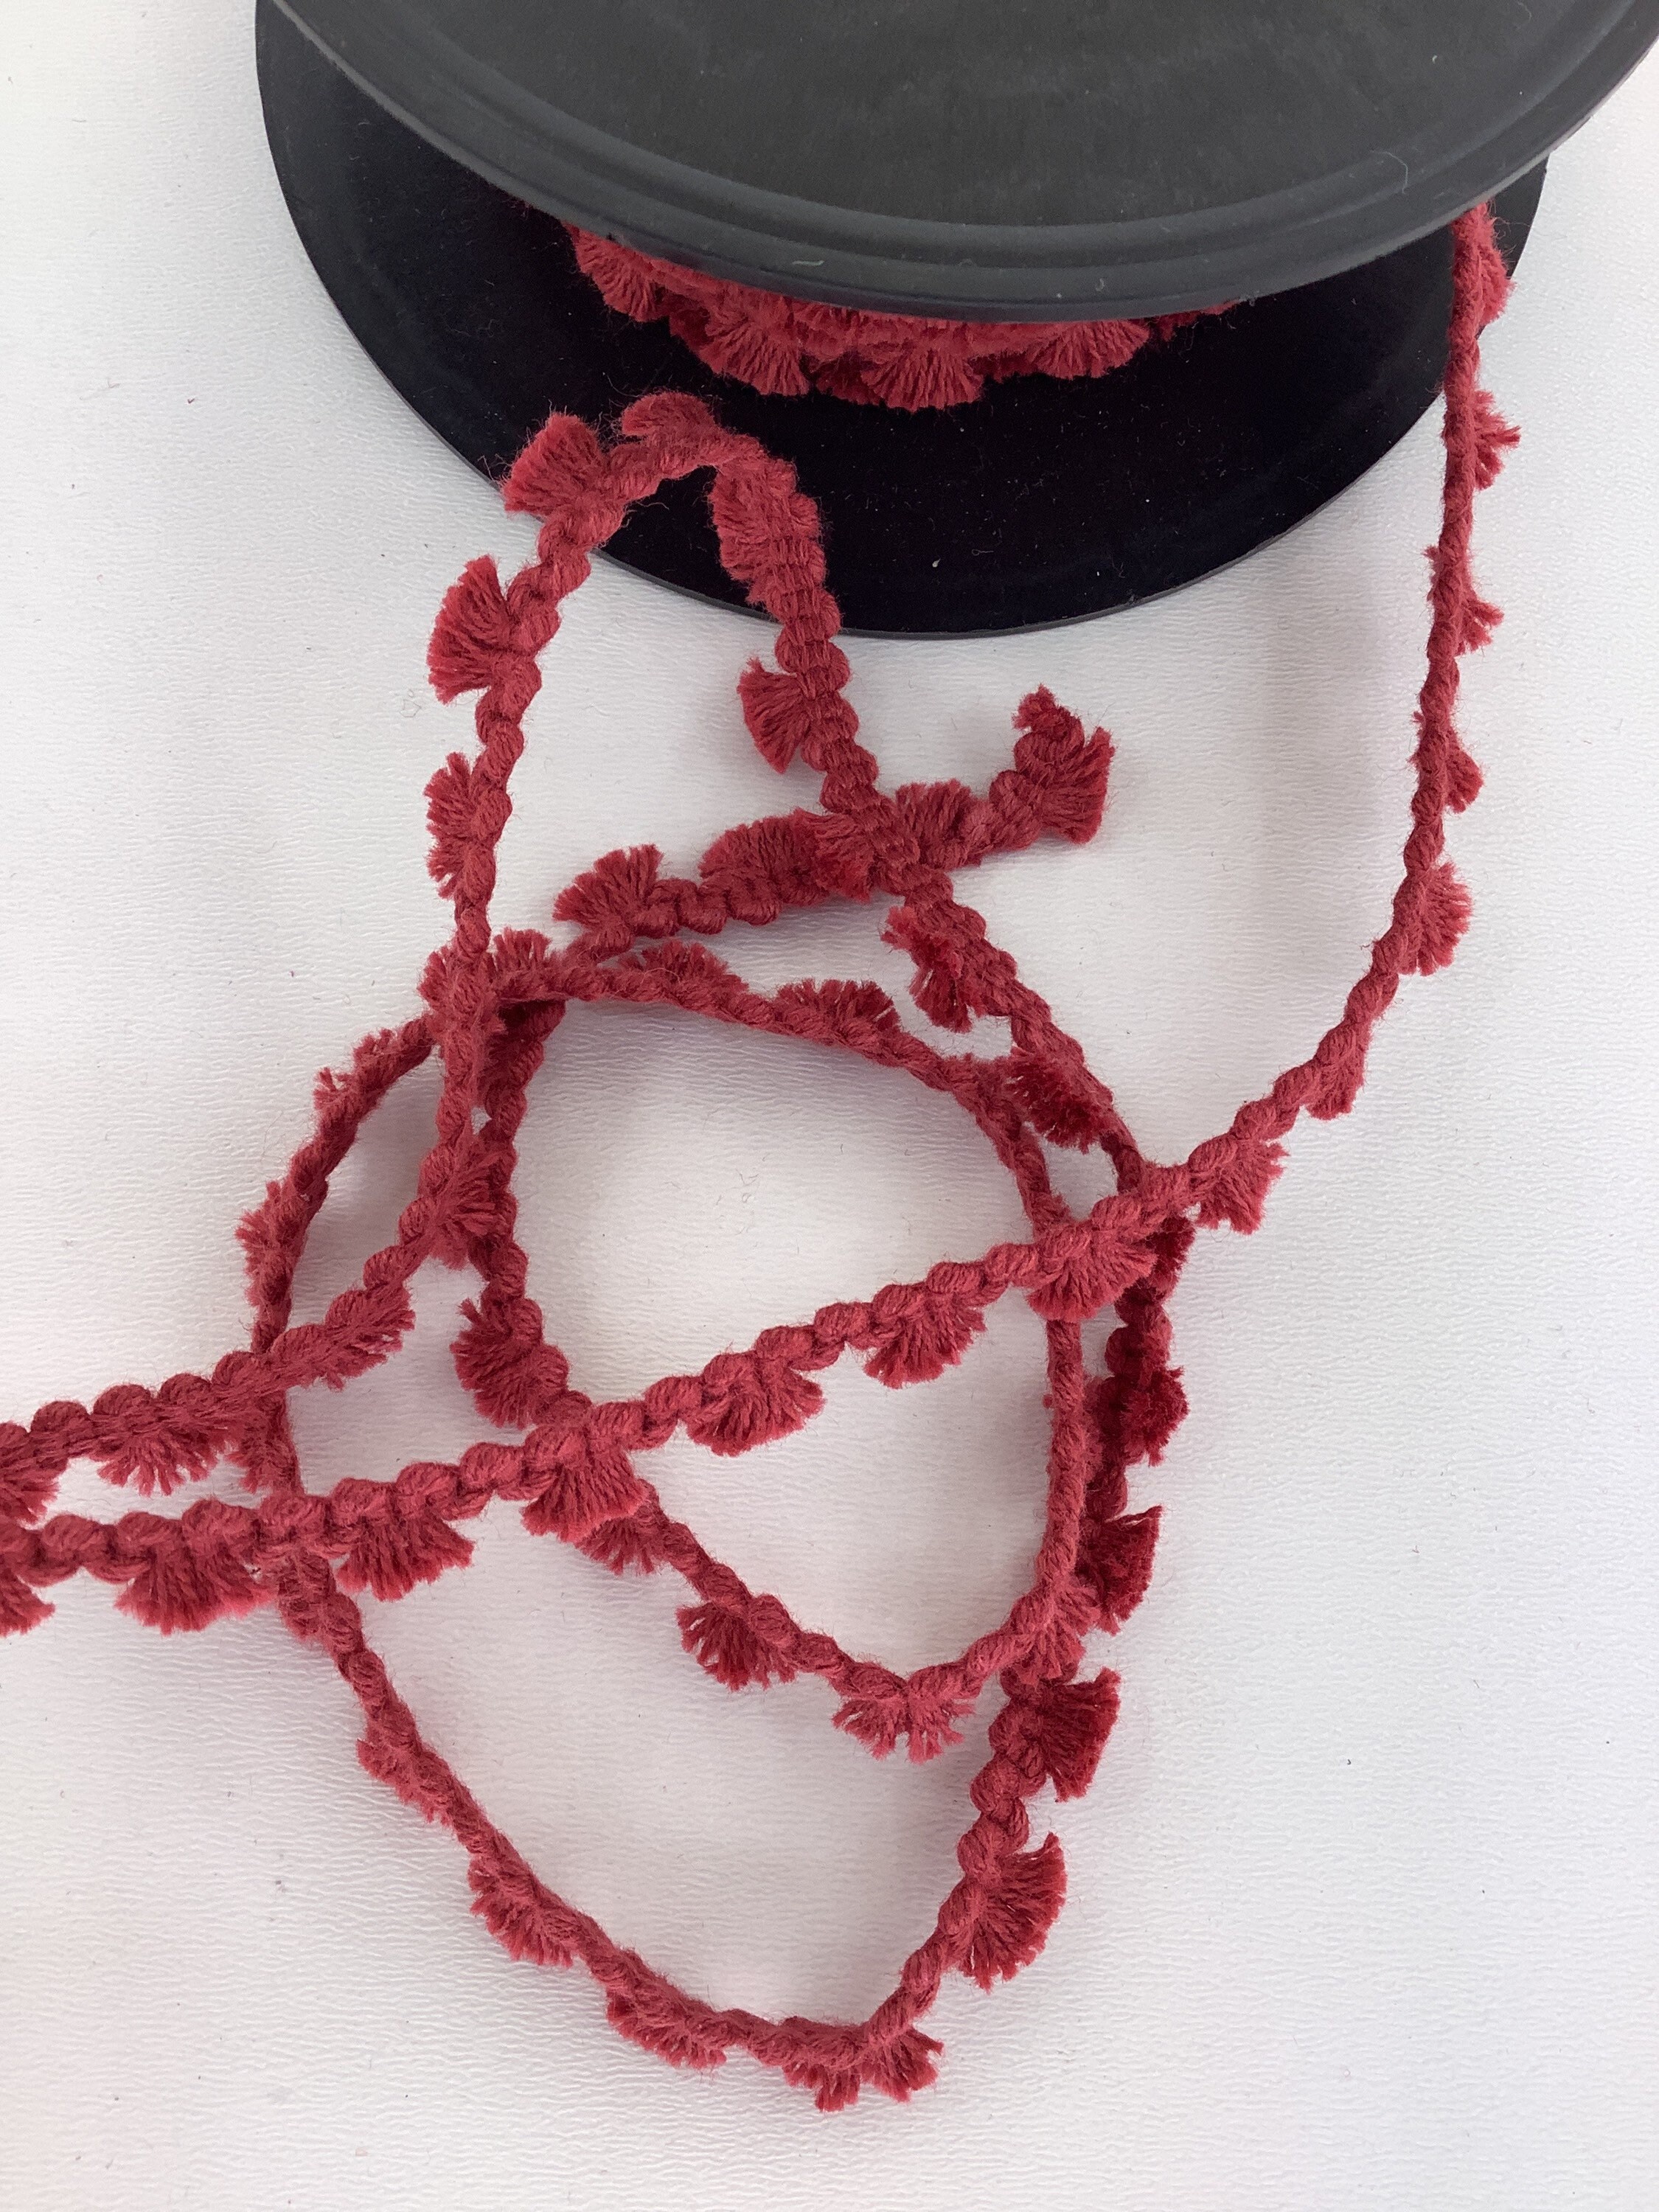 Red Mini Pom Poms Ribbon, 3/8 Red Pom Pom Ribbon Tape, Pom Pom Trim, Thin  Gift Ribbon, Gift Wrap, Hair Ribbon, Craft Supplies, Sewing Trim 